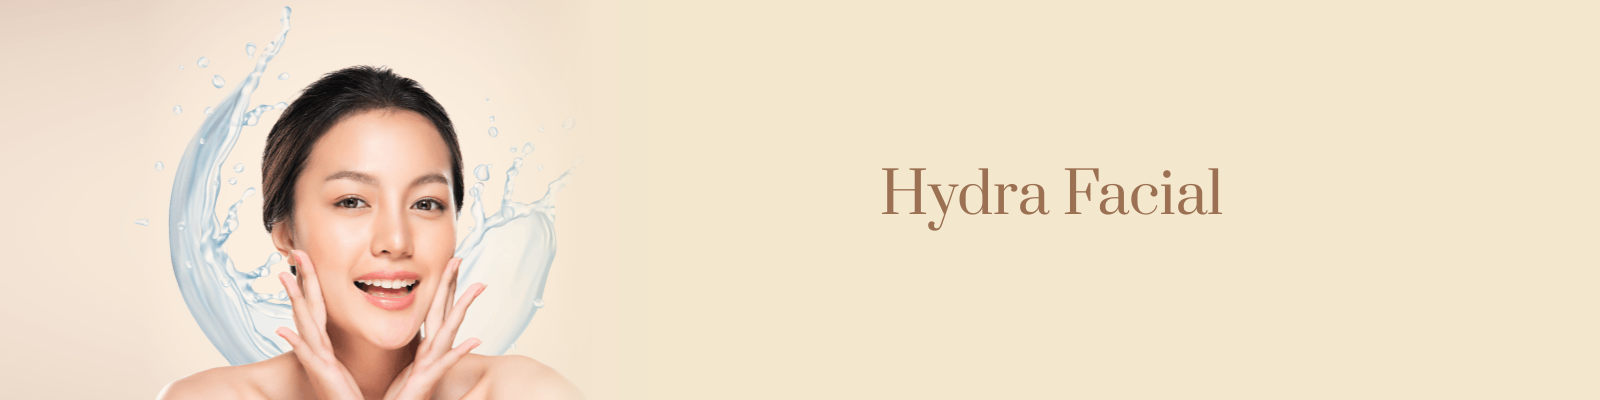 Hydra facial Treatment in Delhi